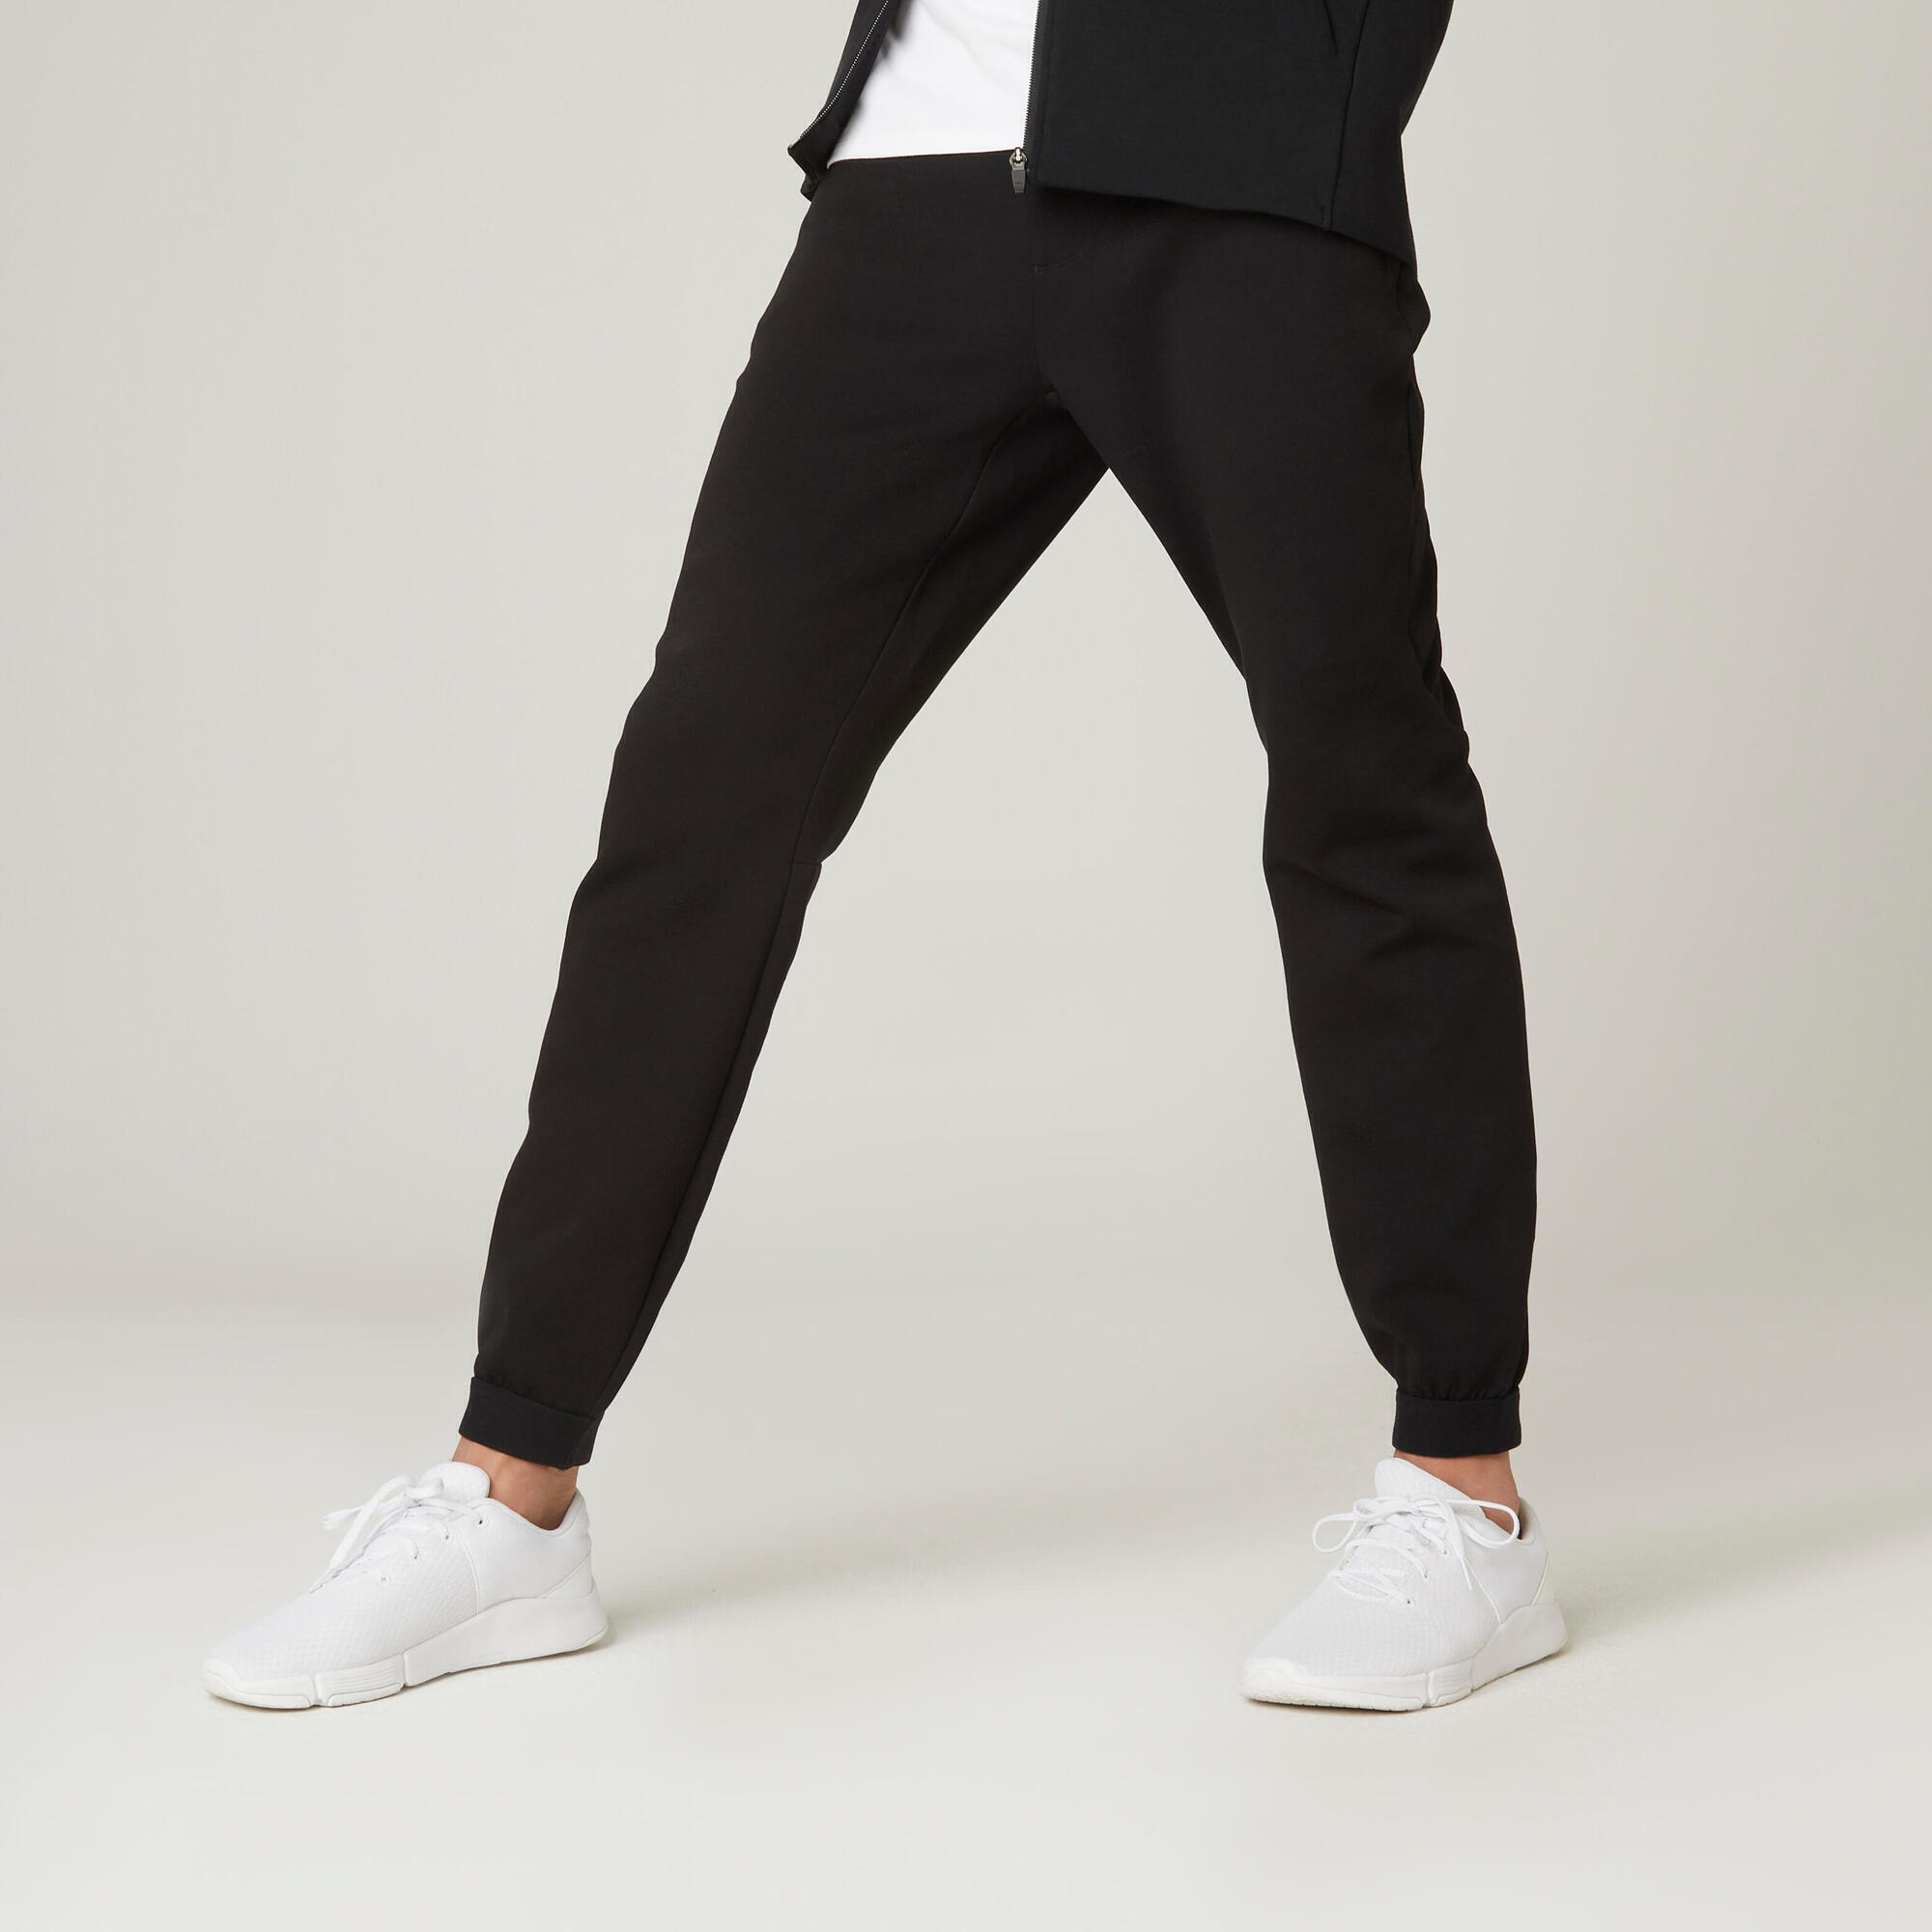 Спортивные штаны Fitness Slim 540 мужские - черные DOMYOS, черный штаны domyos спортивные стильные 36 размер